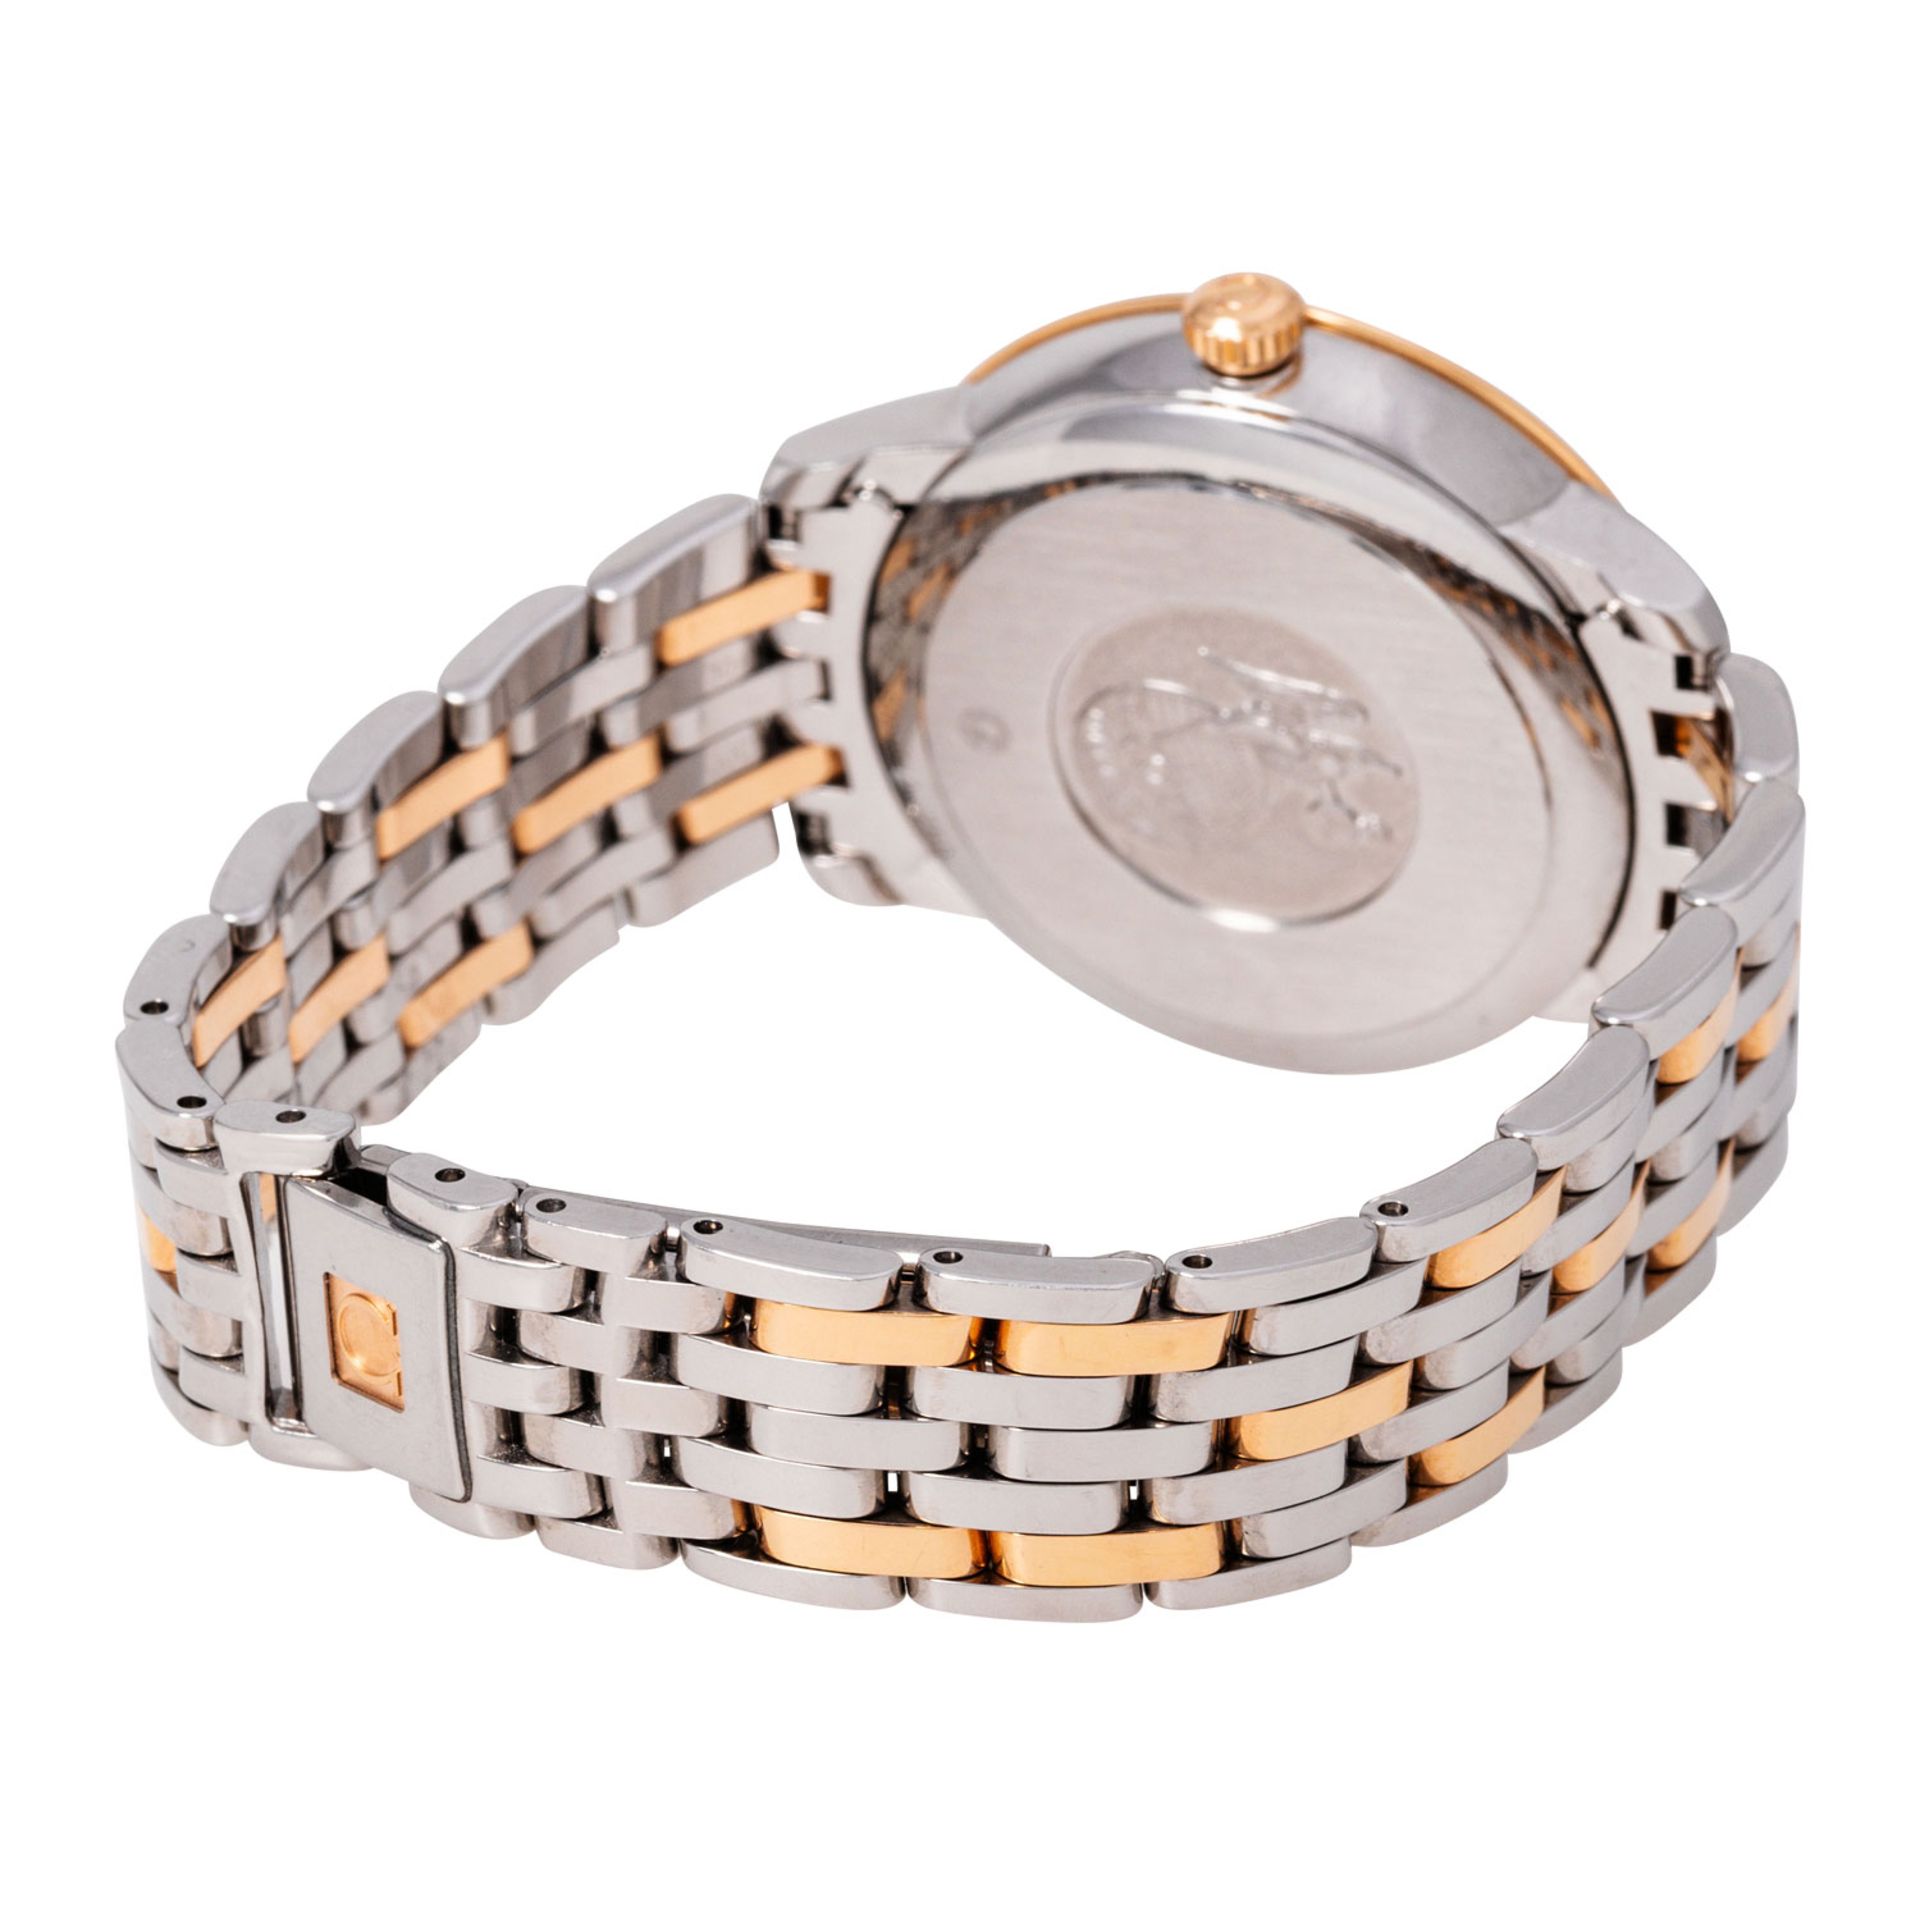 OMEGA De Ville Prestige Ref. 424.20.33.20.52.003 Damen Armbanduhr von 2018.  - Bild 7 aus 9